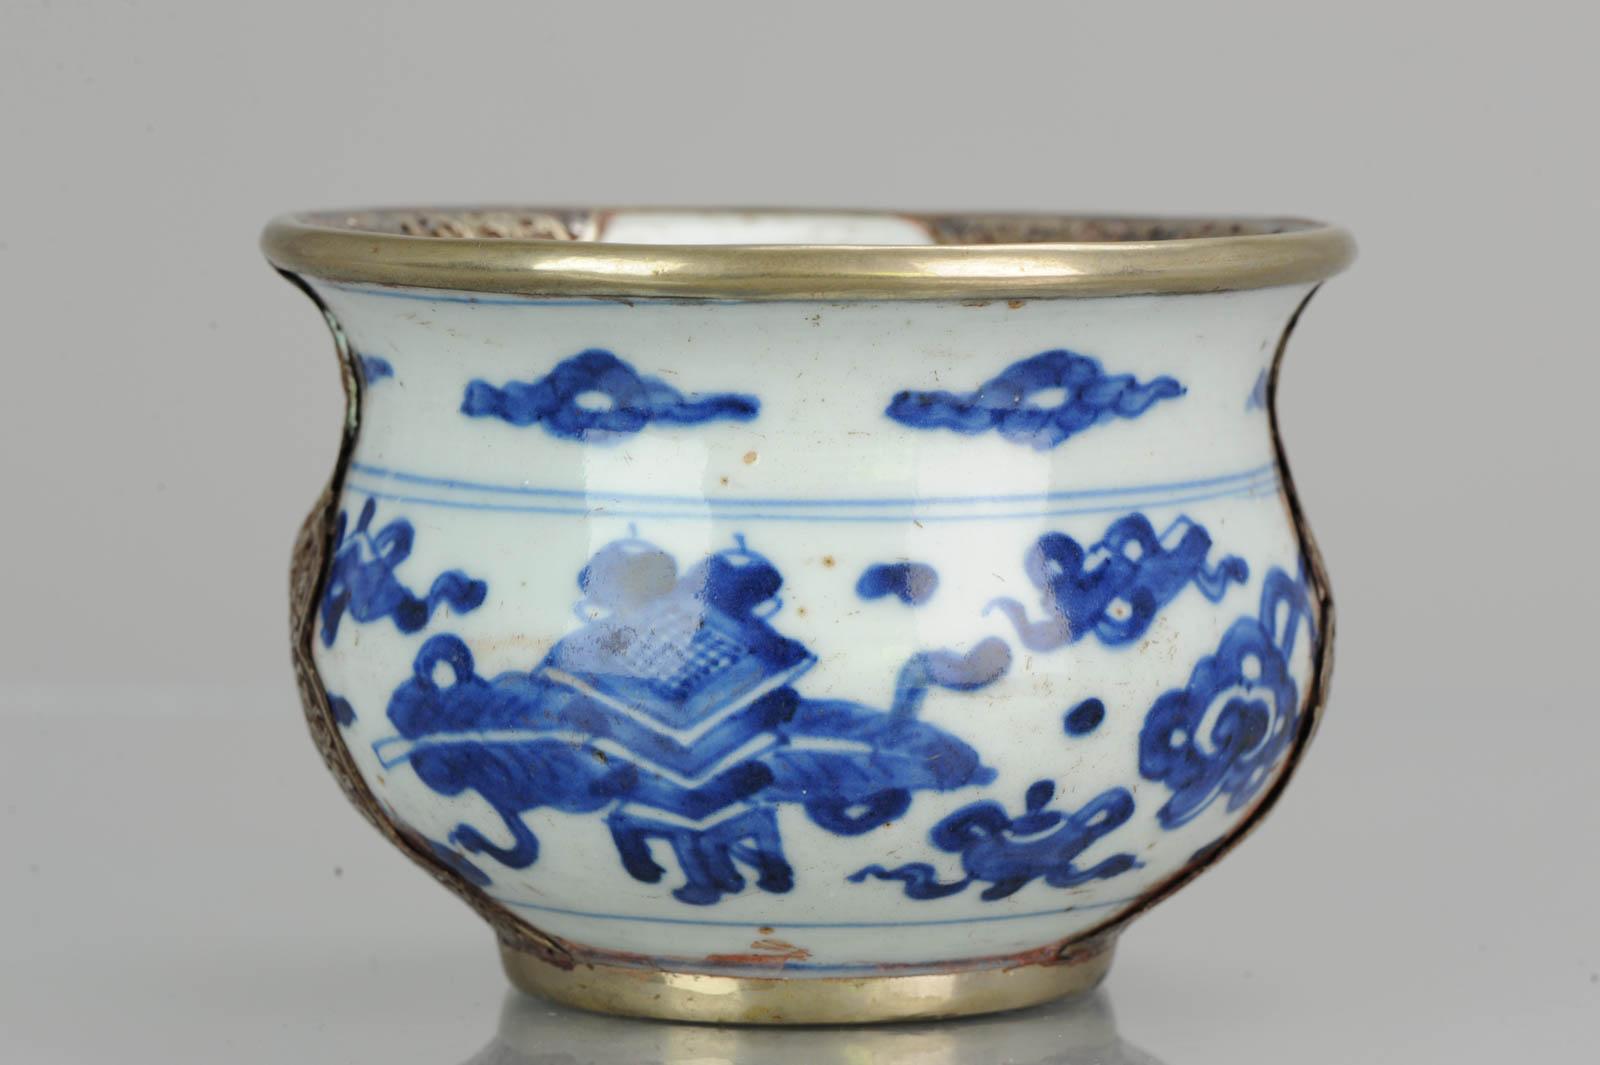 17th century porcelain